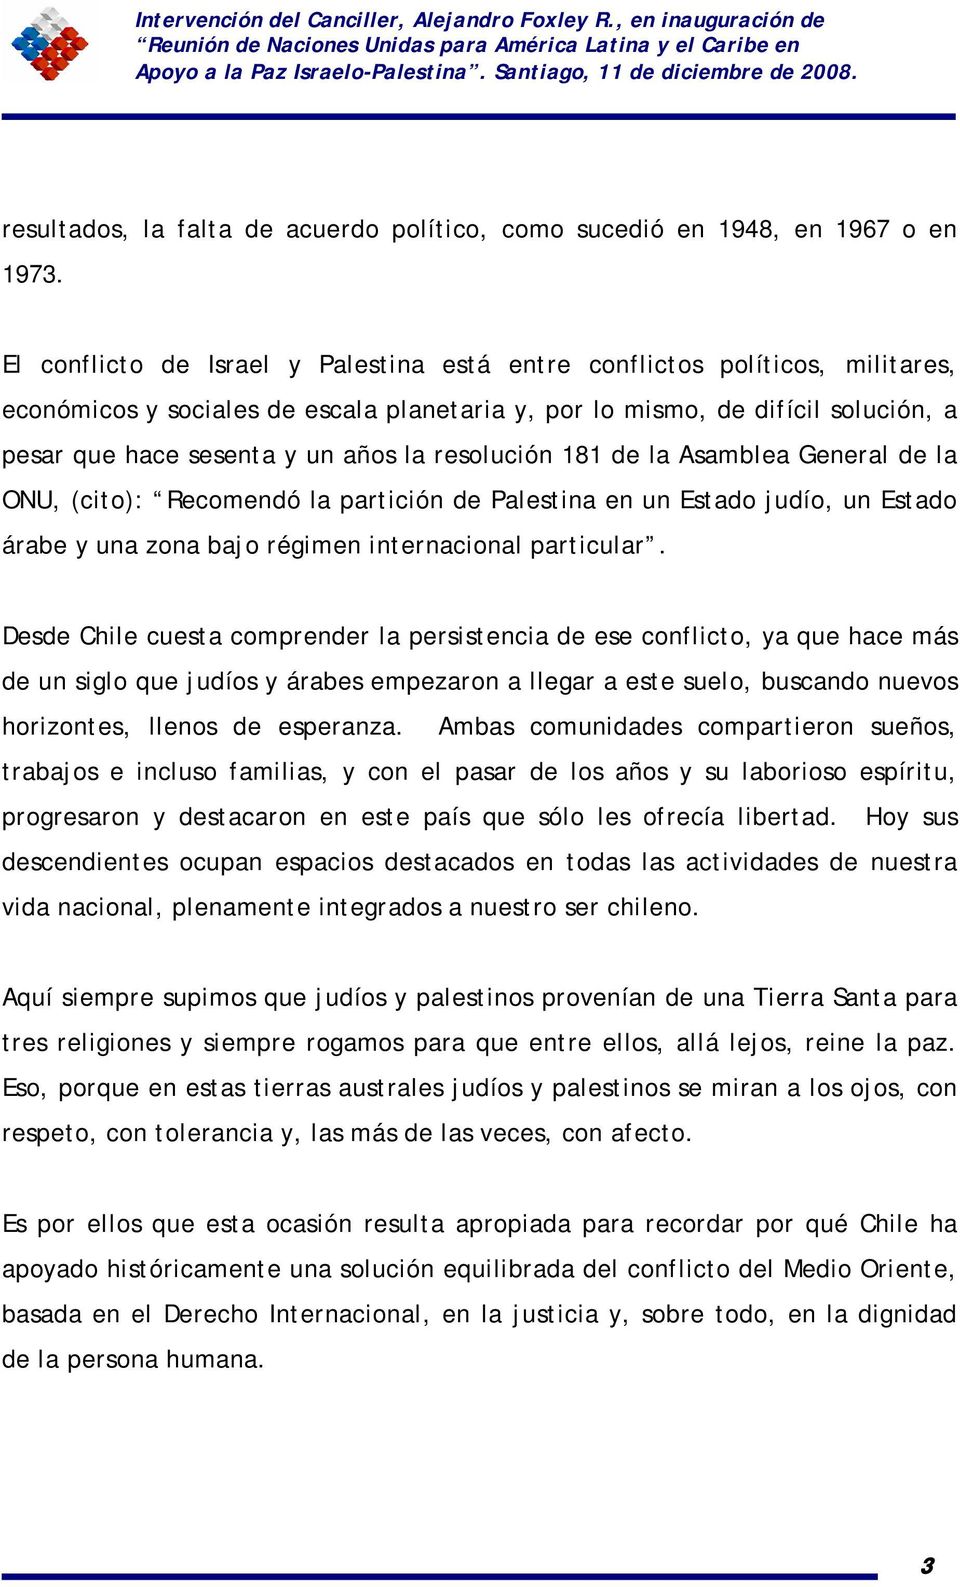 resolución 181 de la Asamblea General de la ONU, (cito): Recomendó la partición de Palestina en un Estado judío, un Estado árabe y una zona bajo régimen internacional particular.